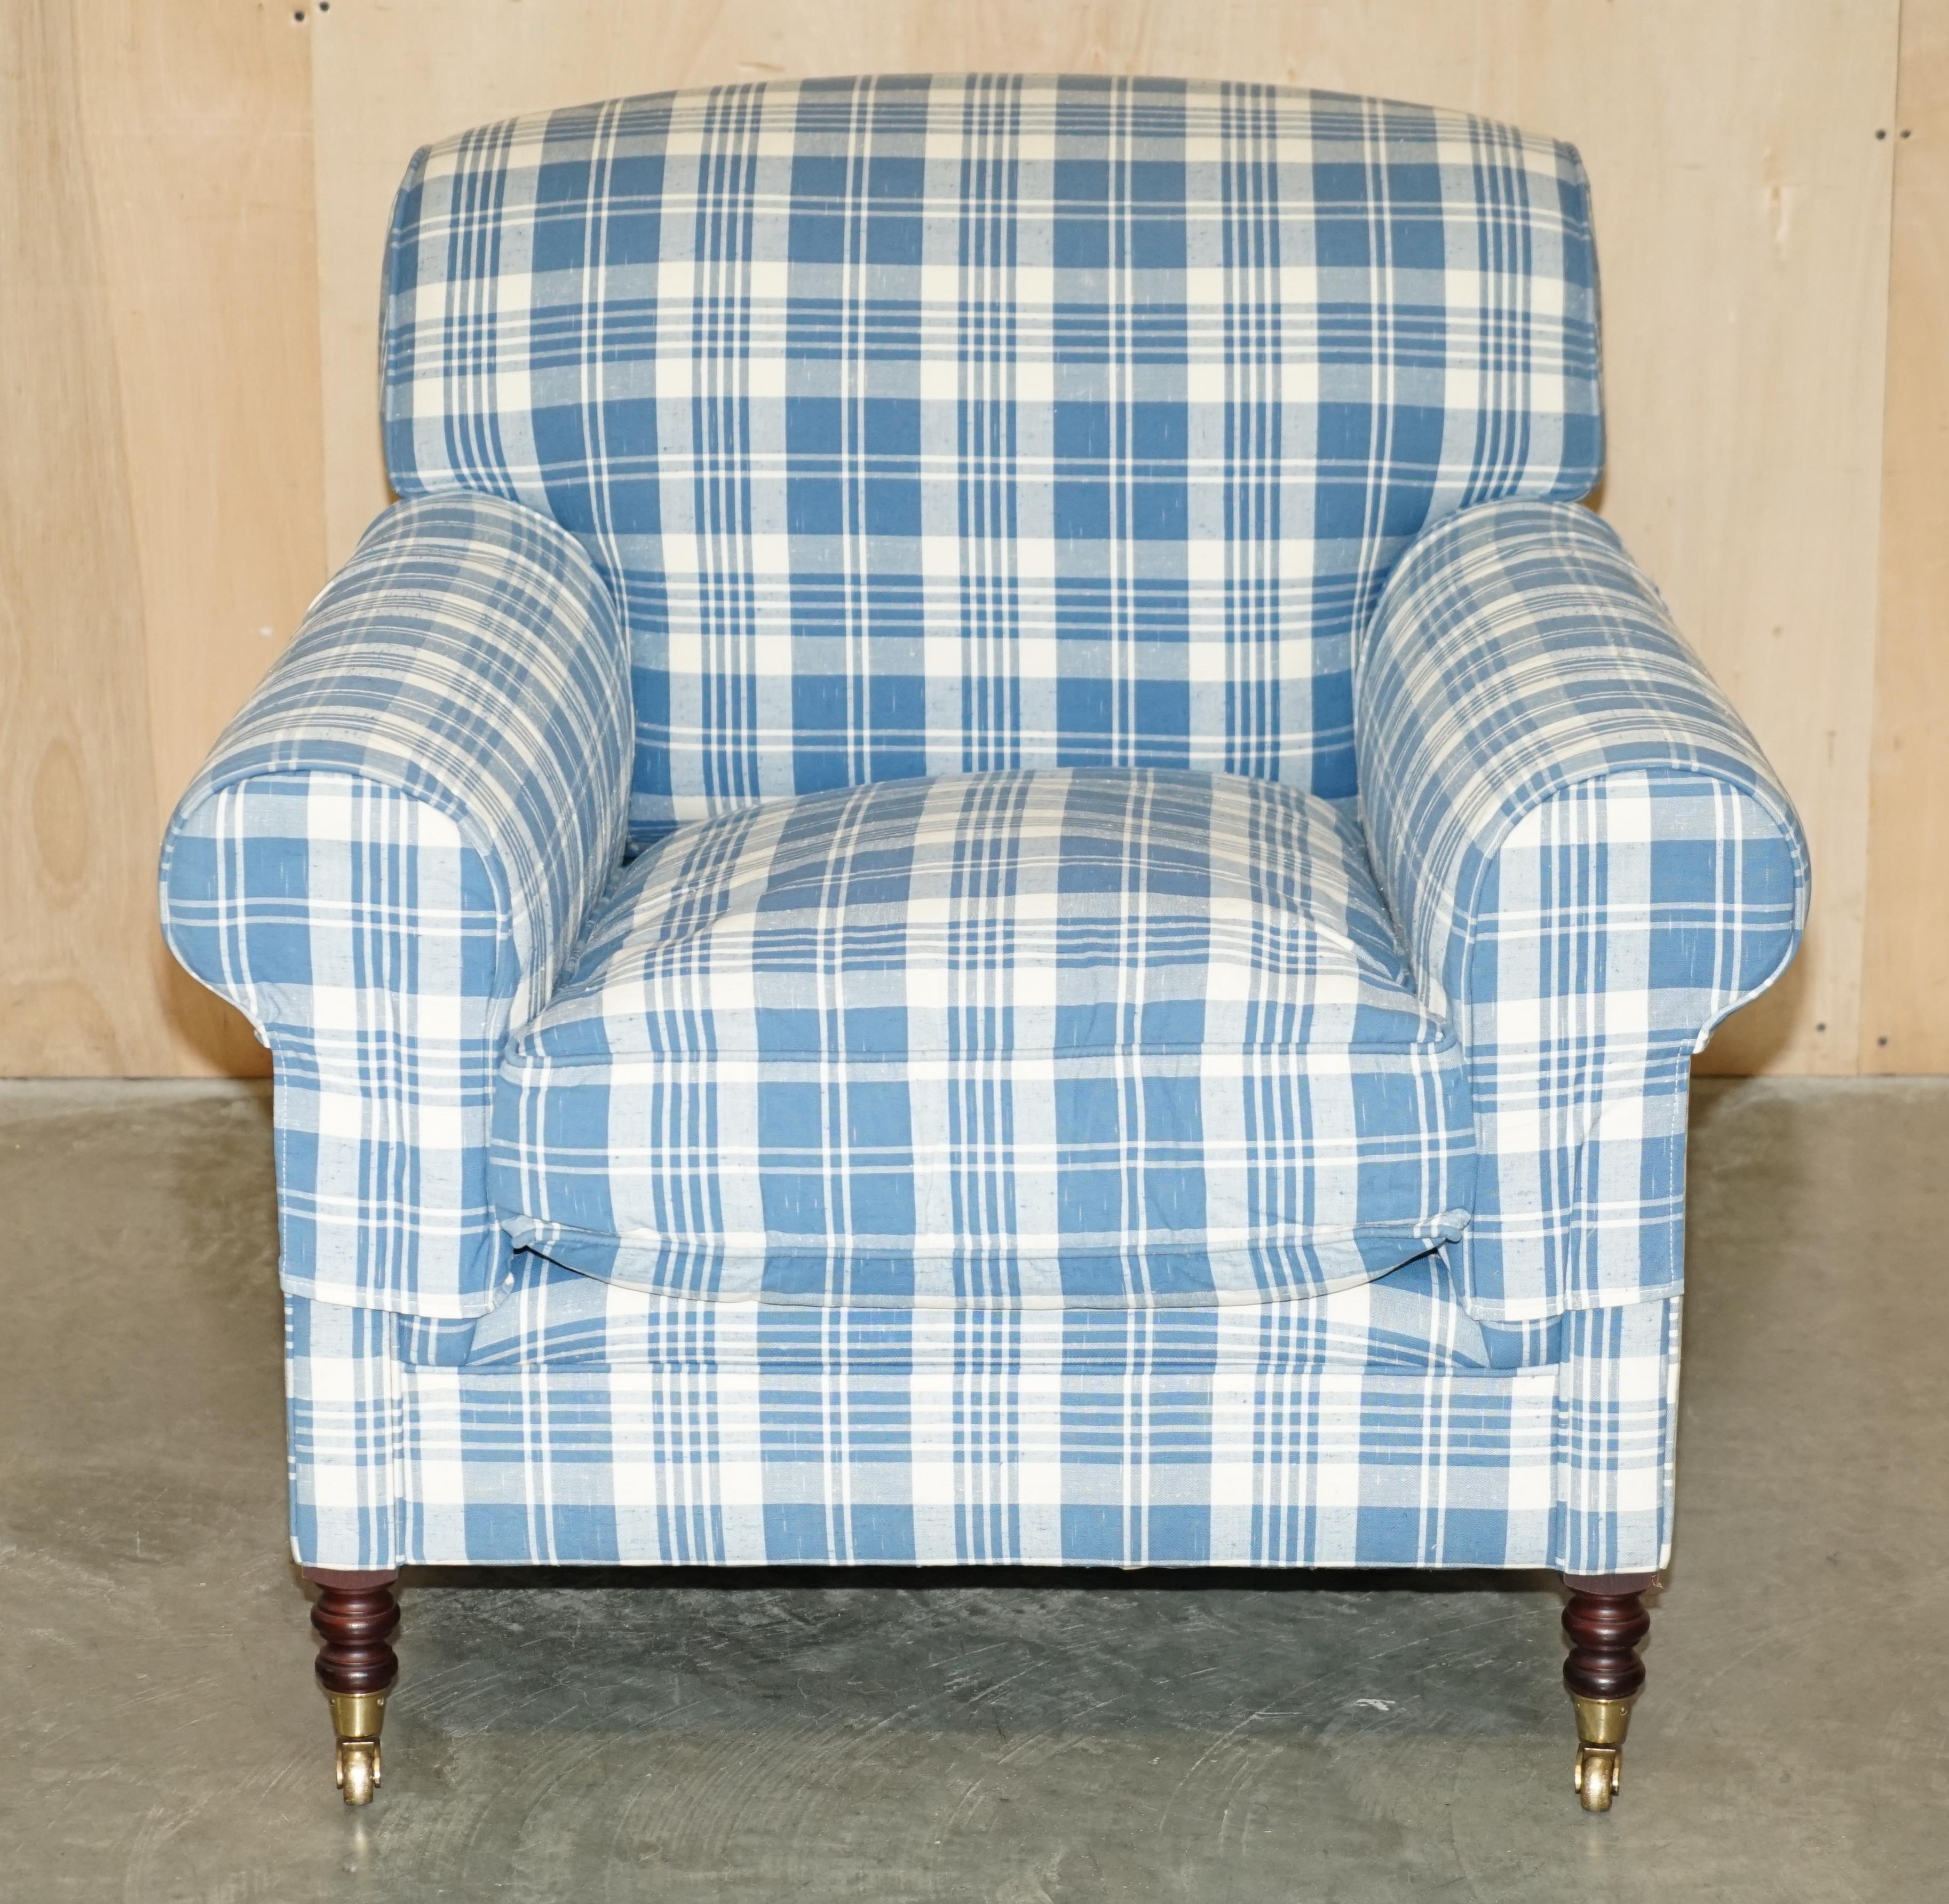 Royal House Antiques

Royal House Antiques a le plaisir de proposer à la vente ce superbe fauteuil George Smith Chelsea, Signature à bras complet avec coussin en plumes et tapisserie à carreaux RRP £6300

Veuillez noter que les frais de livraison